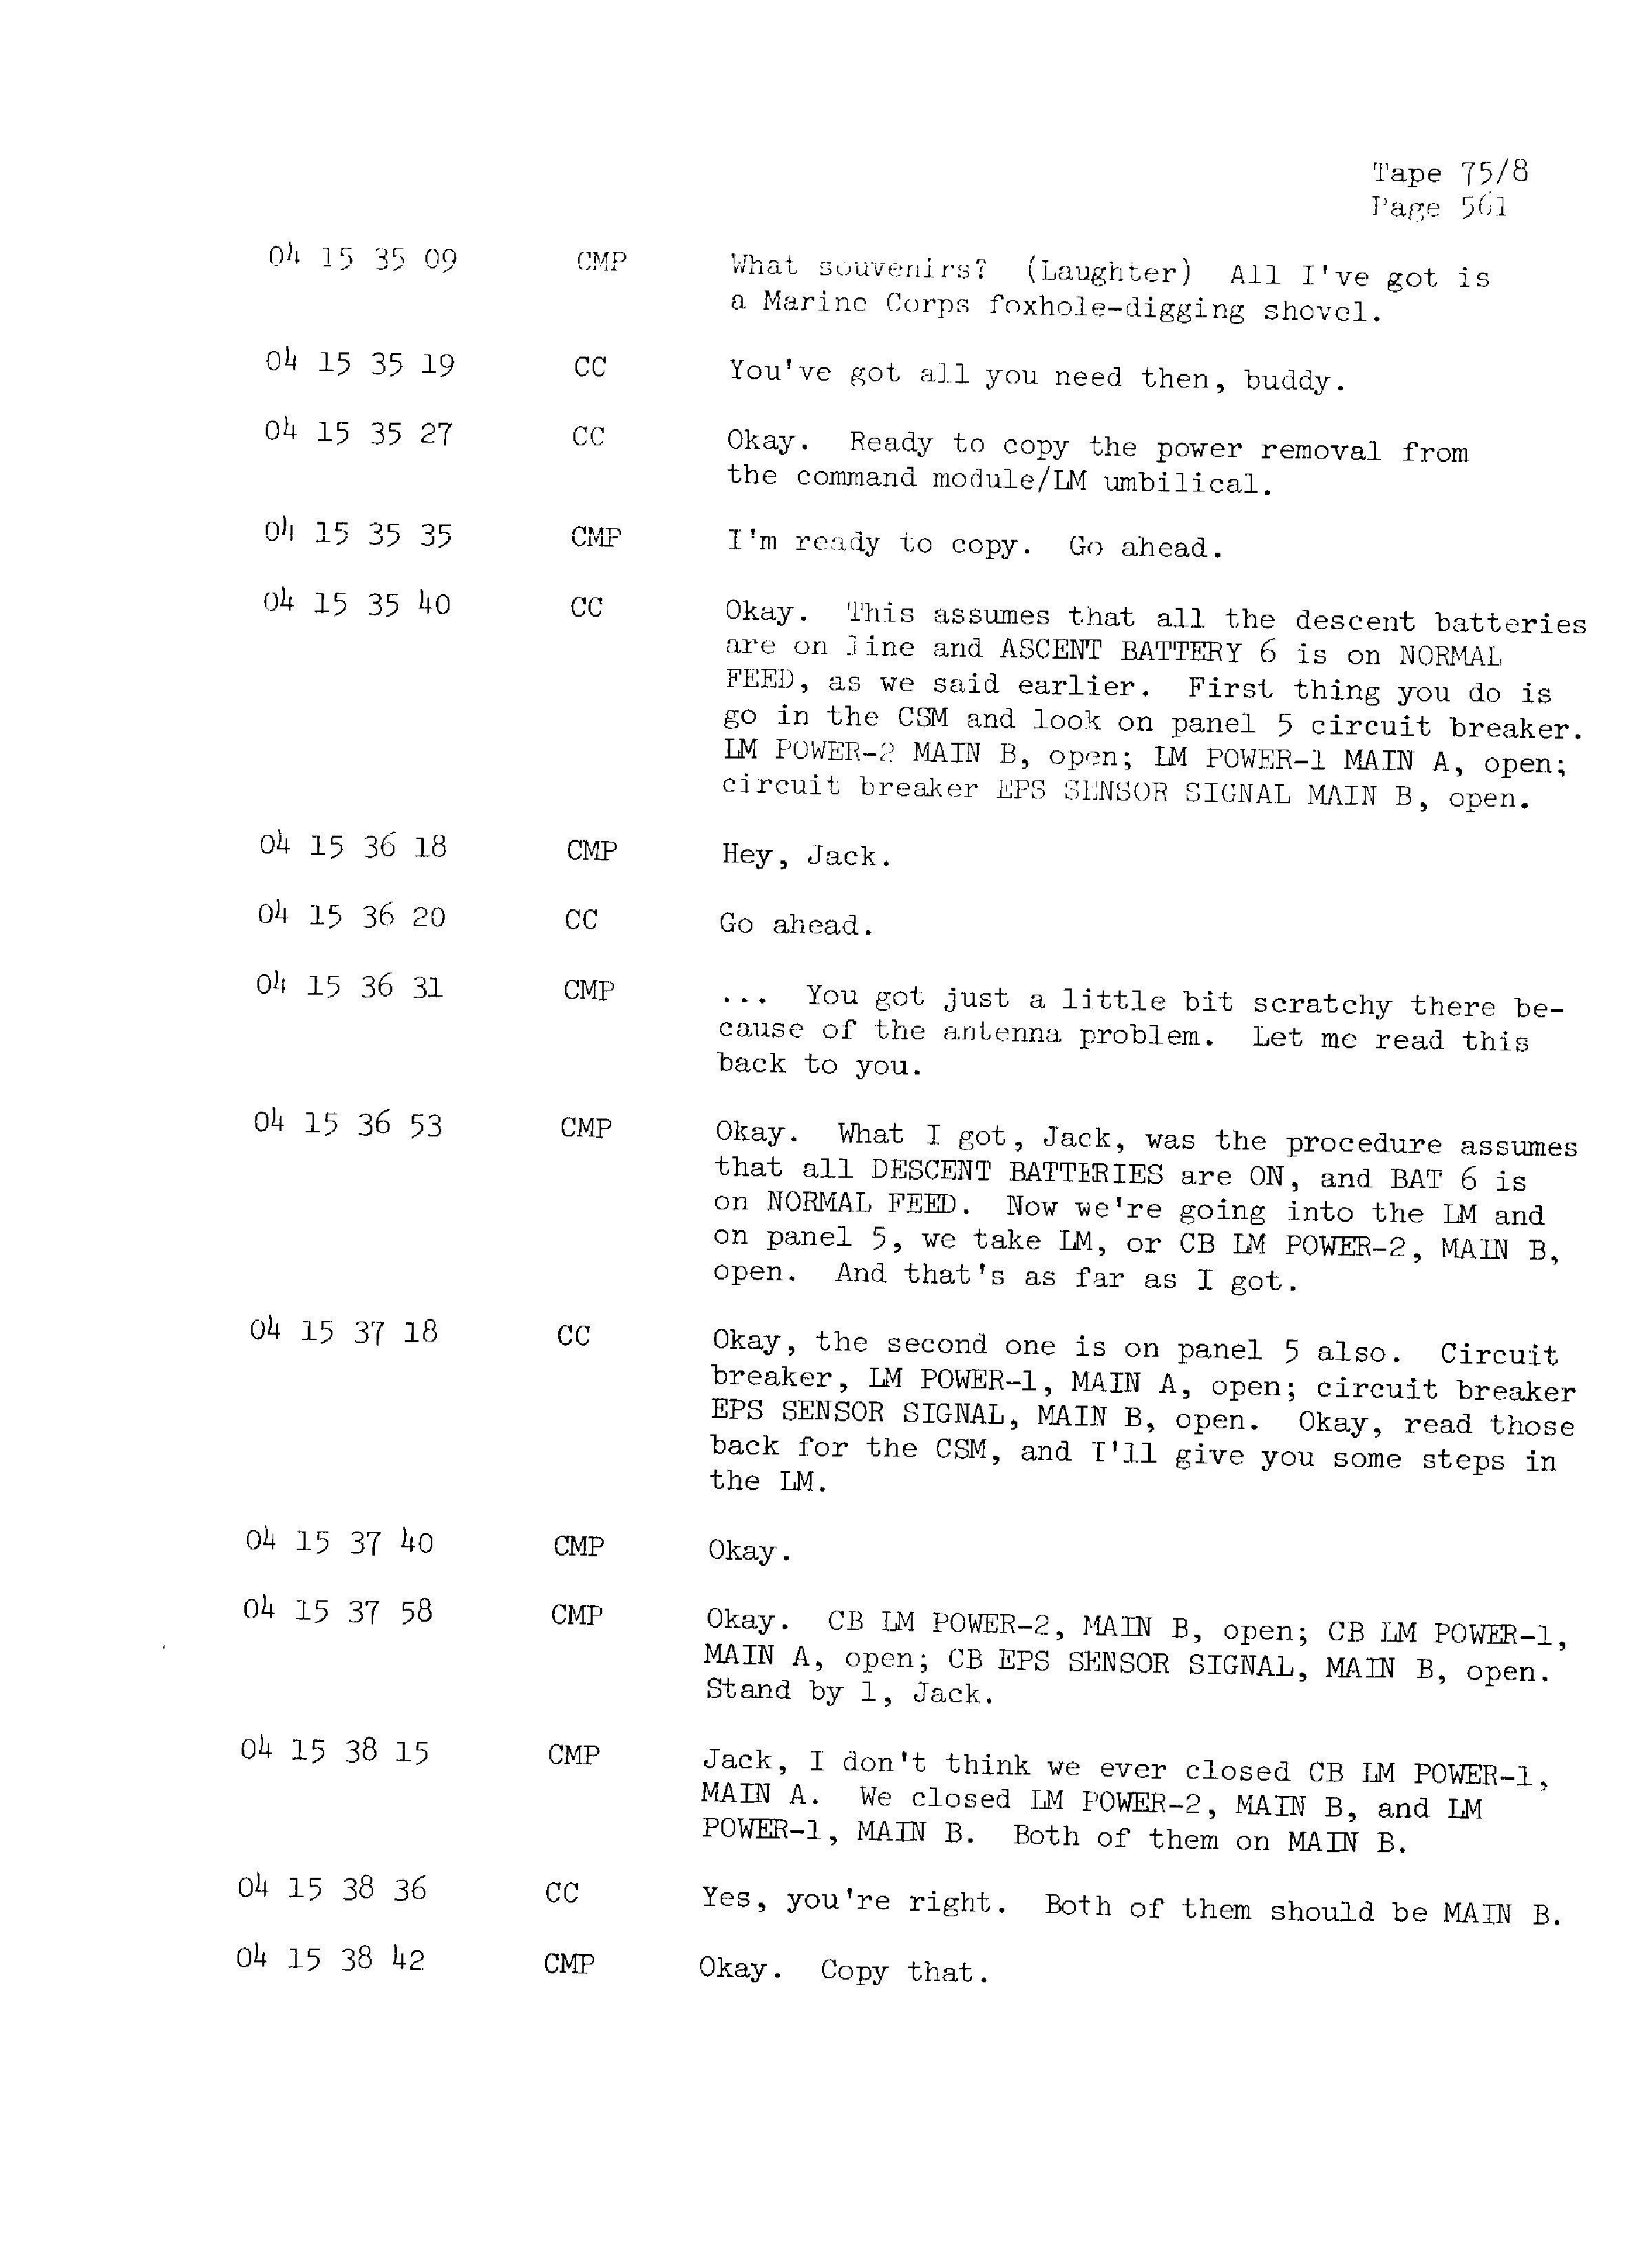 Page 568 of Apollo 13’s original transcript